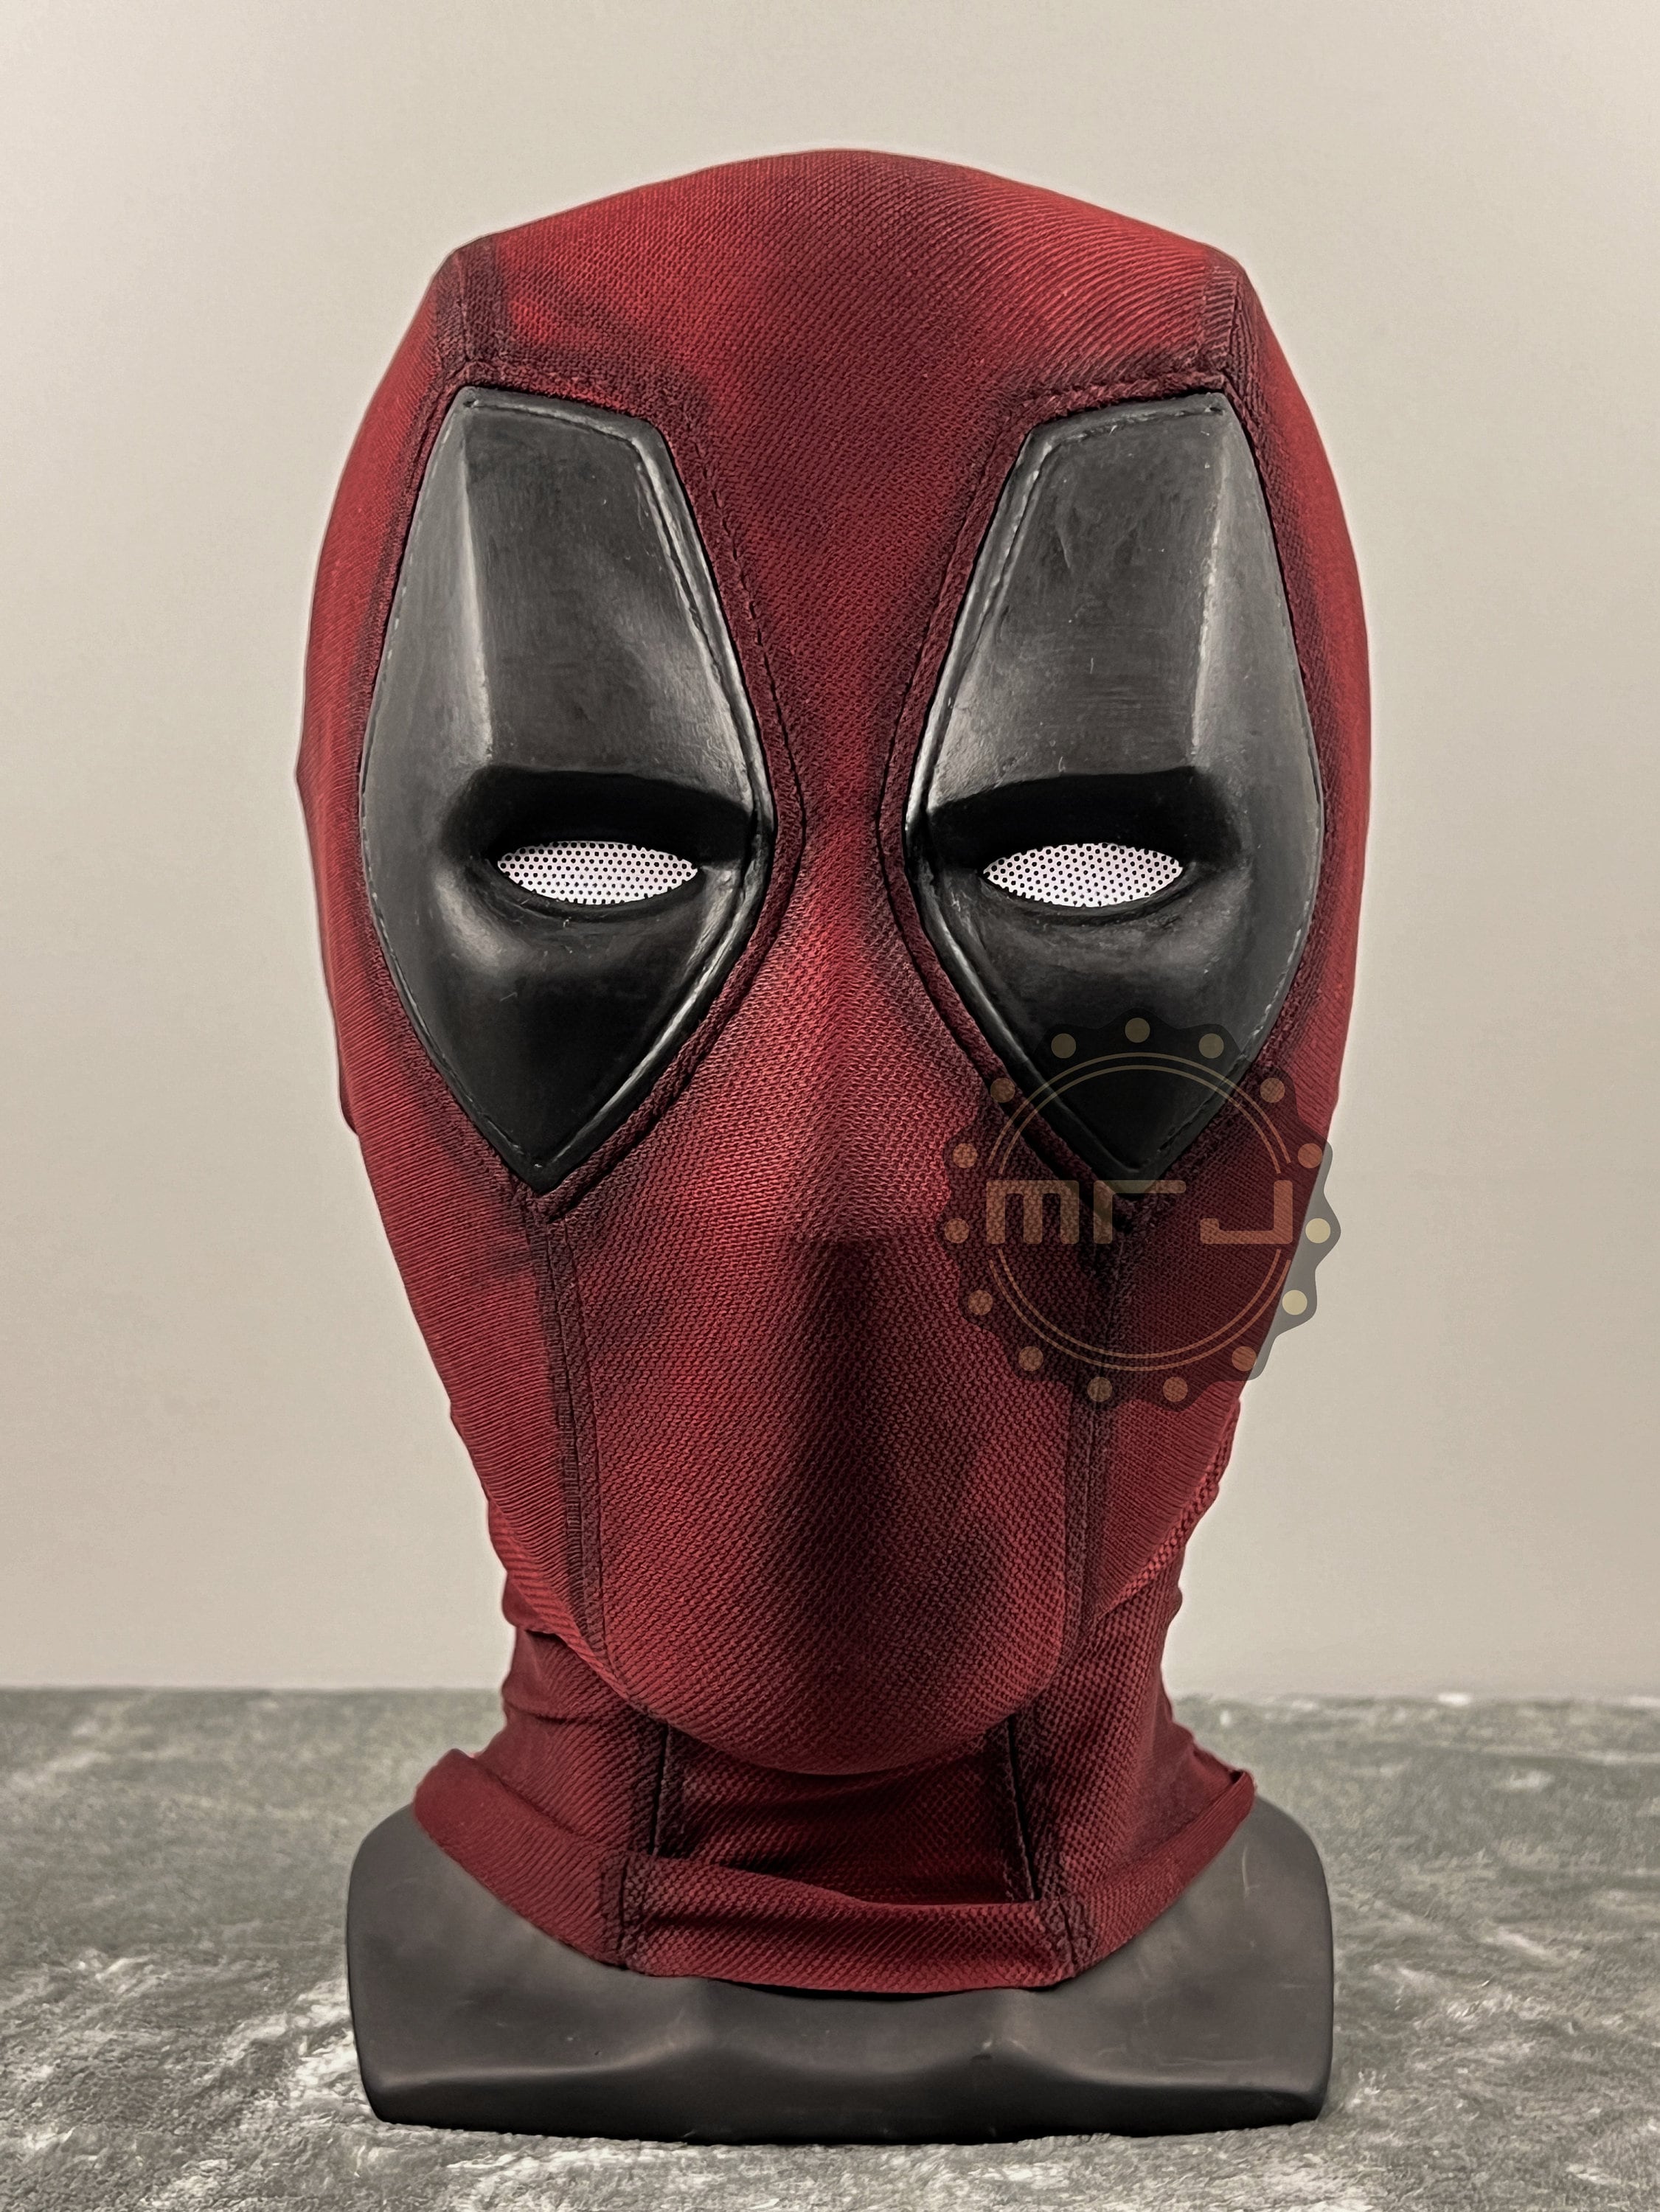 Disfraz de Deadpool desgastado/traje de cosplay réplica: hecho de cuero y  elástico estampado en 4 direcciones teñido a medida -  España